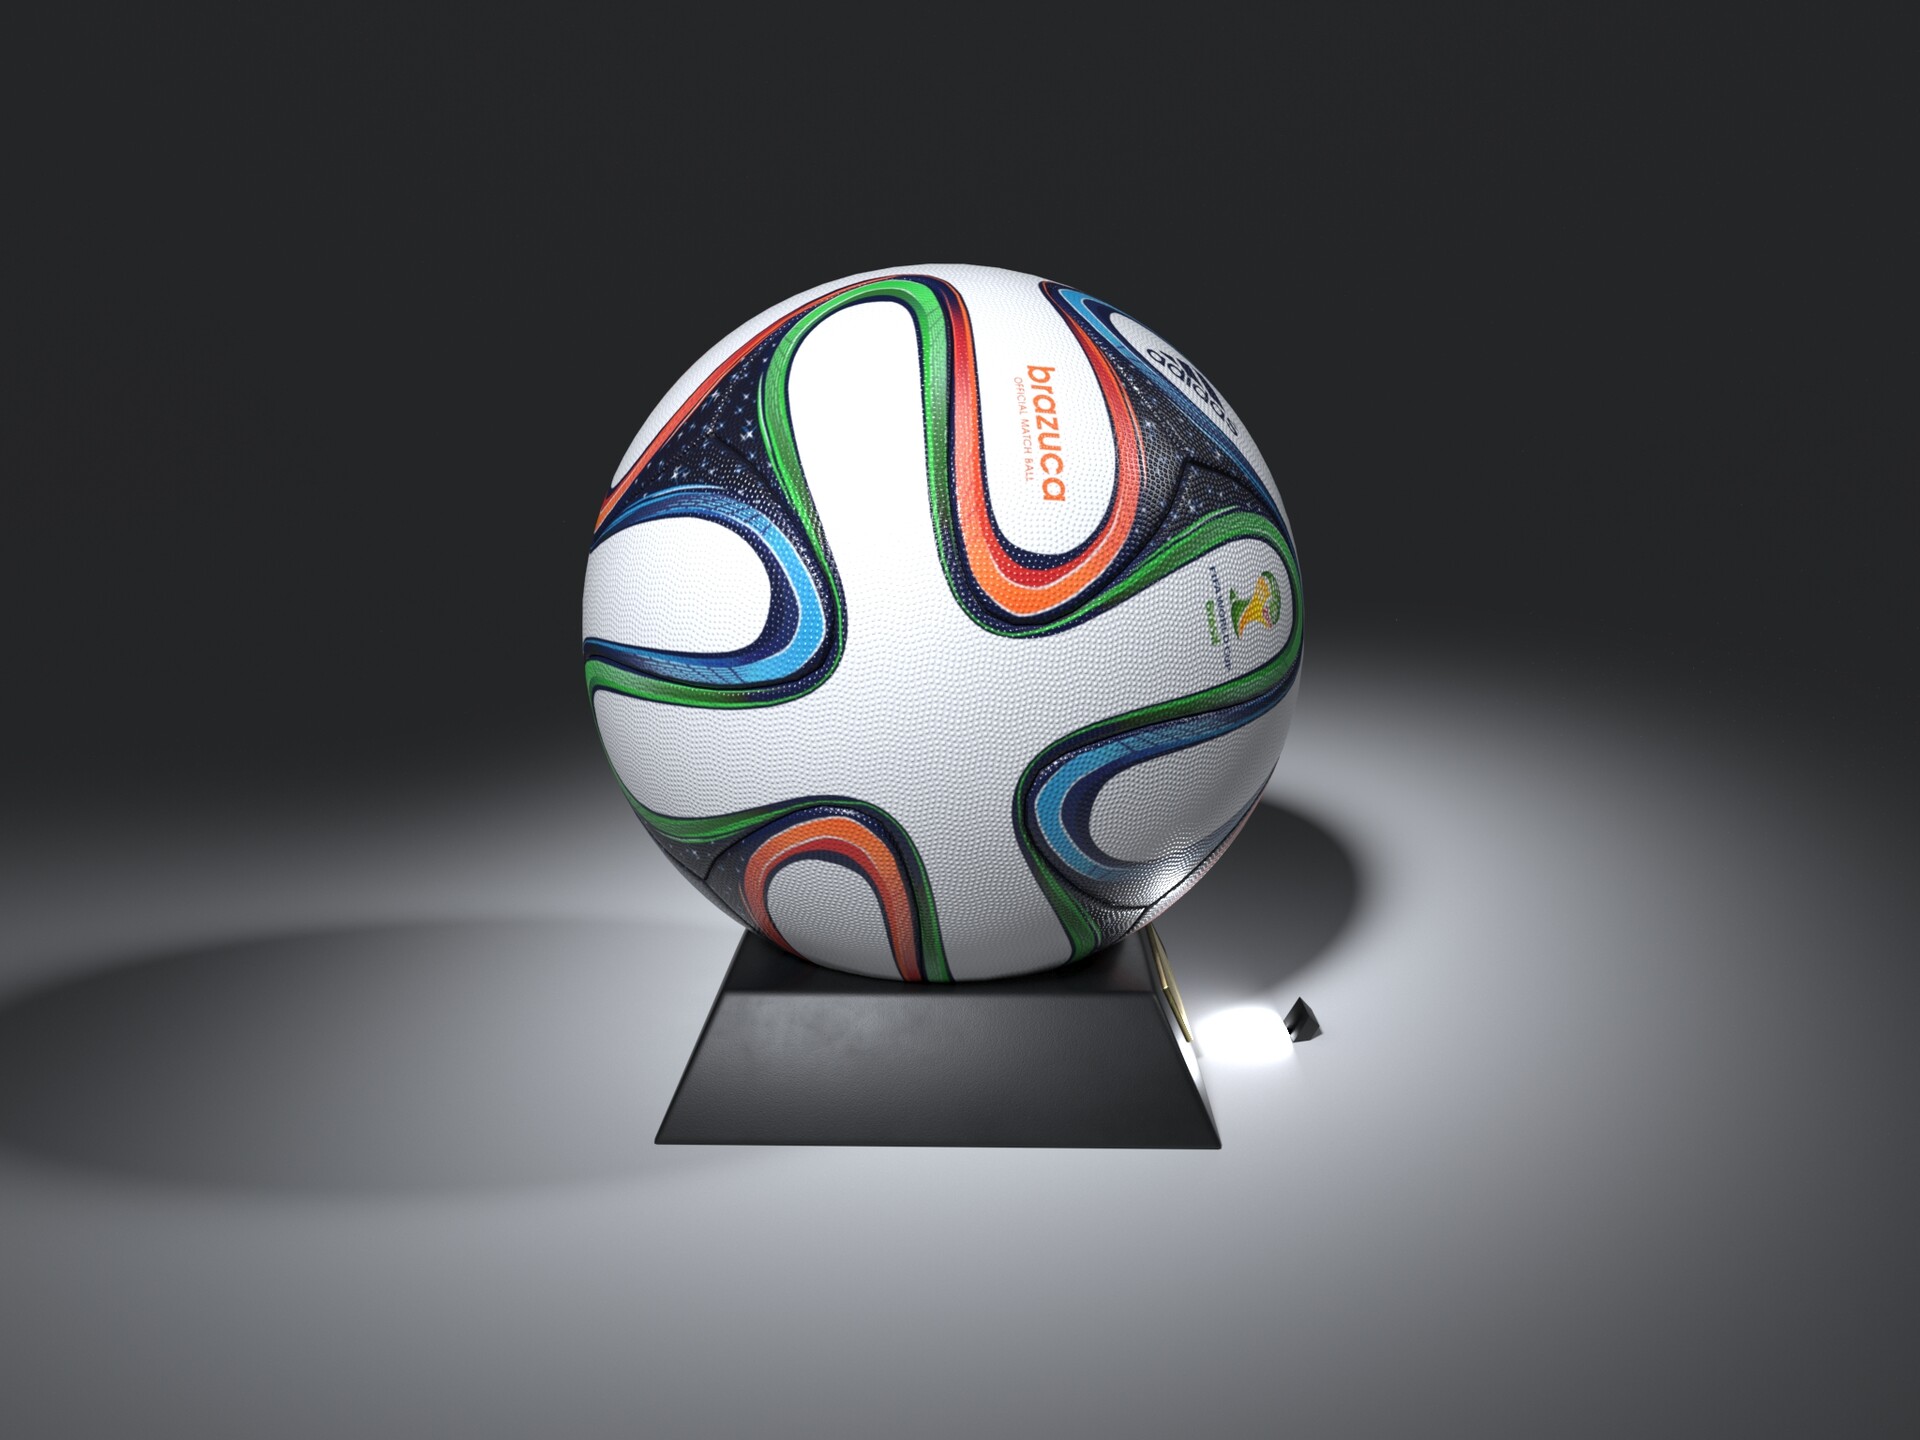 ArtStation - Football Ball Brazuca FIFA World Cup 2014